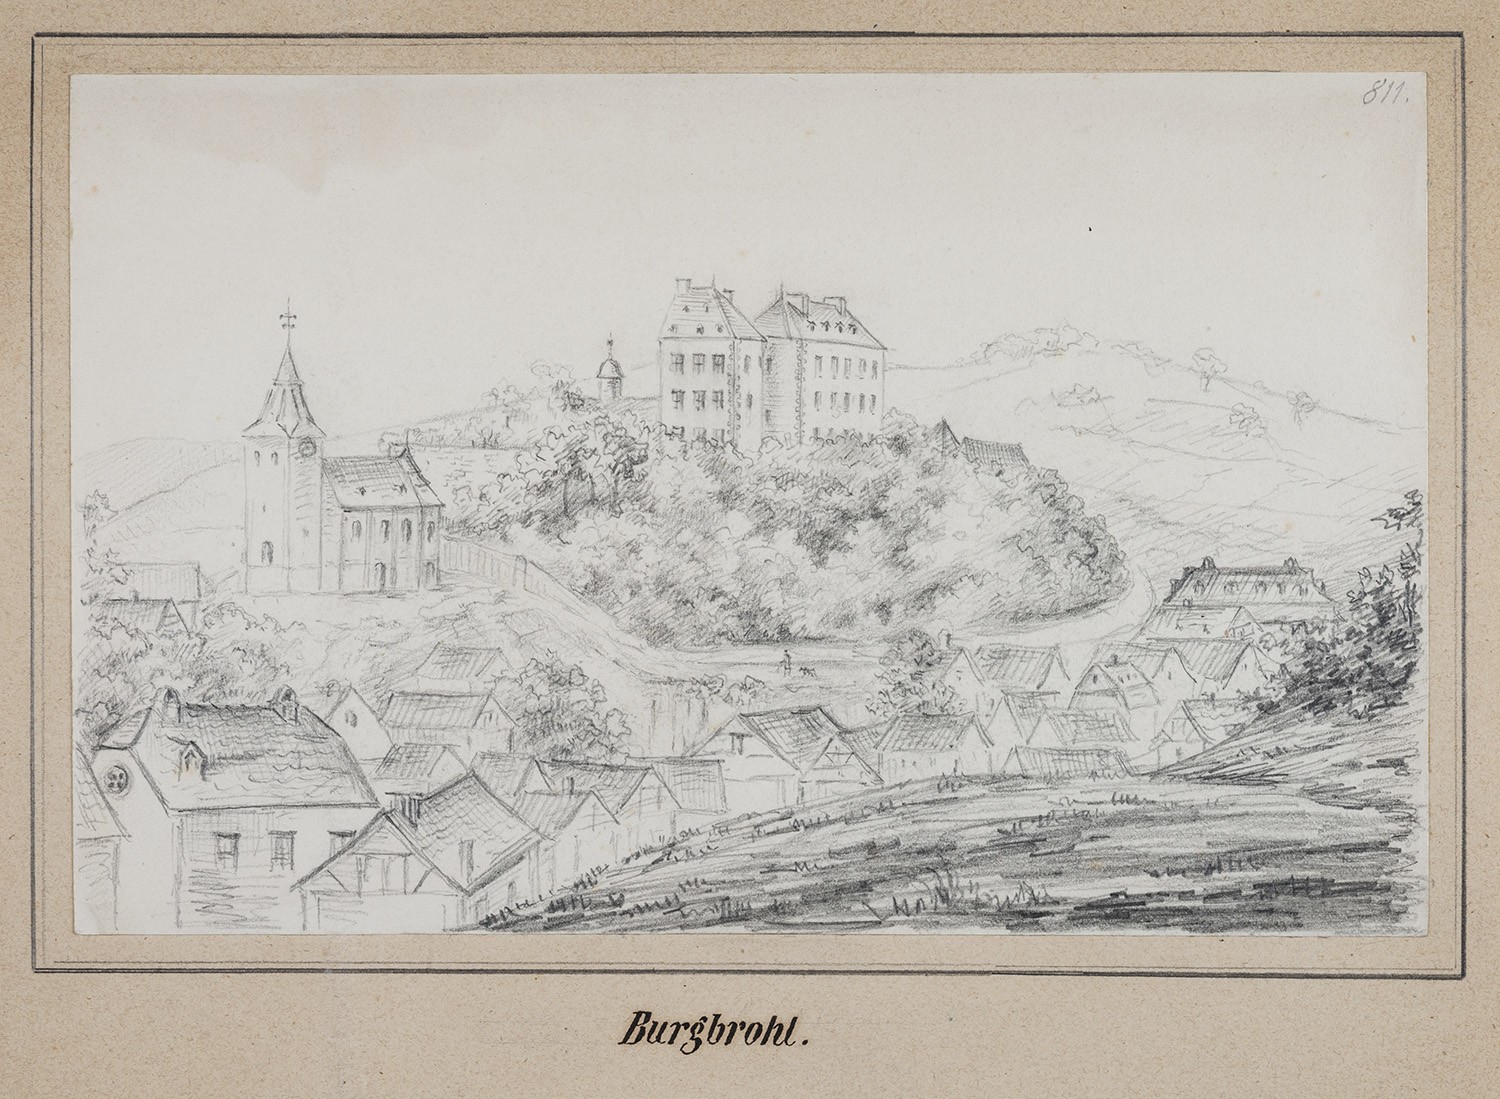 Burgbrohl (Rheinland-Pfalz): Schloss und Kirche (Landesgeschichtliche Vereinigung für die Mark Brandenburg e.V., Archiv CC BY)